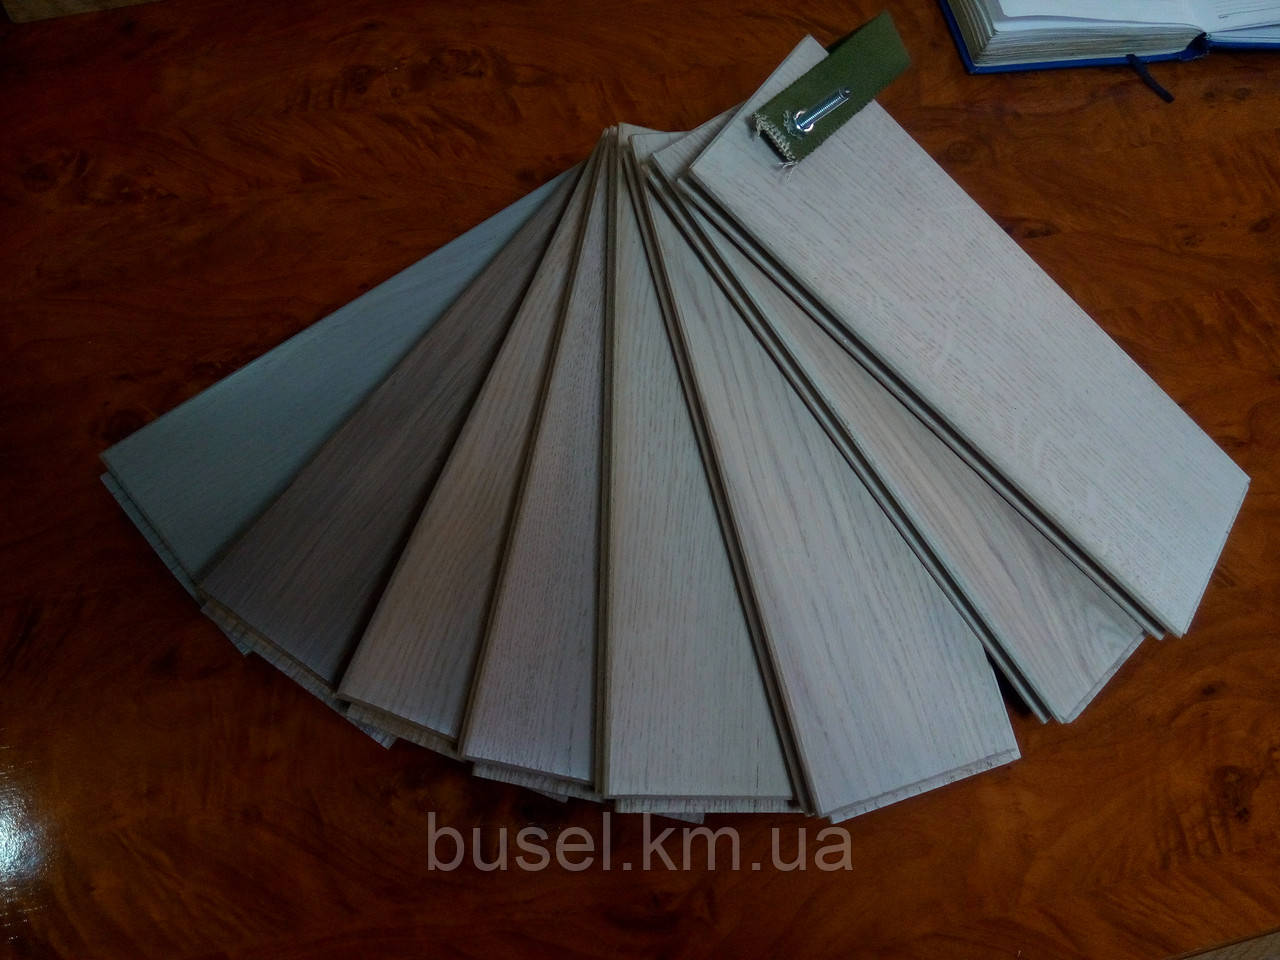 Дошка підлоги масивна ДУБ (сорт НАТУР) покриття МАСЛО, 15х120х400-1200, доставка по Україні